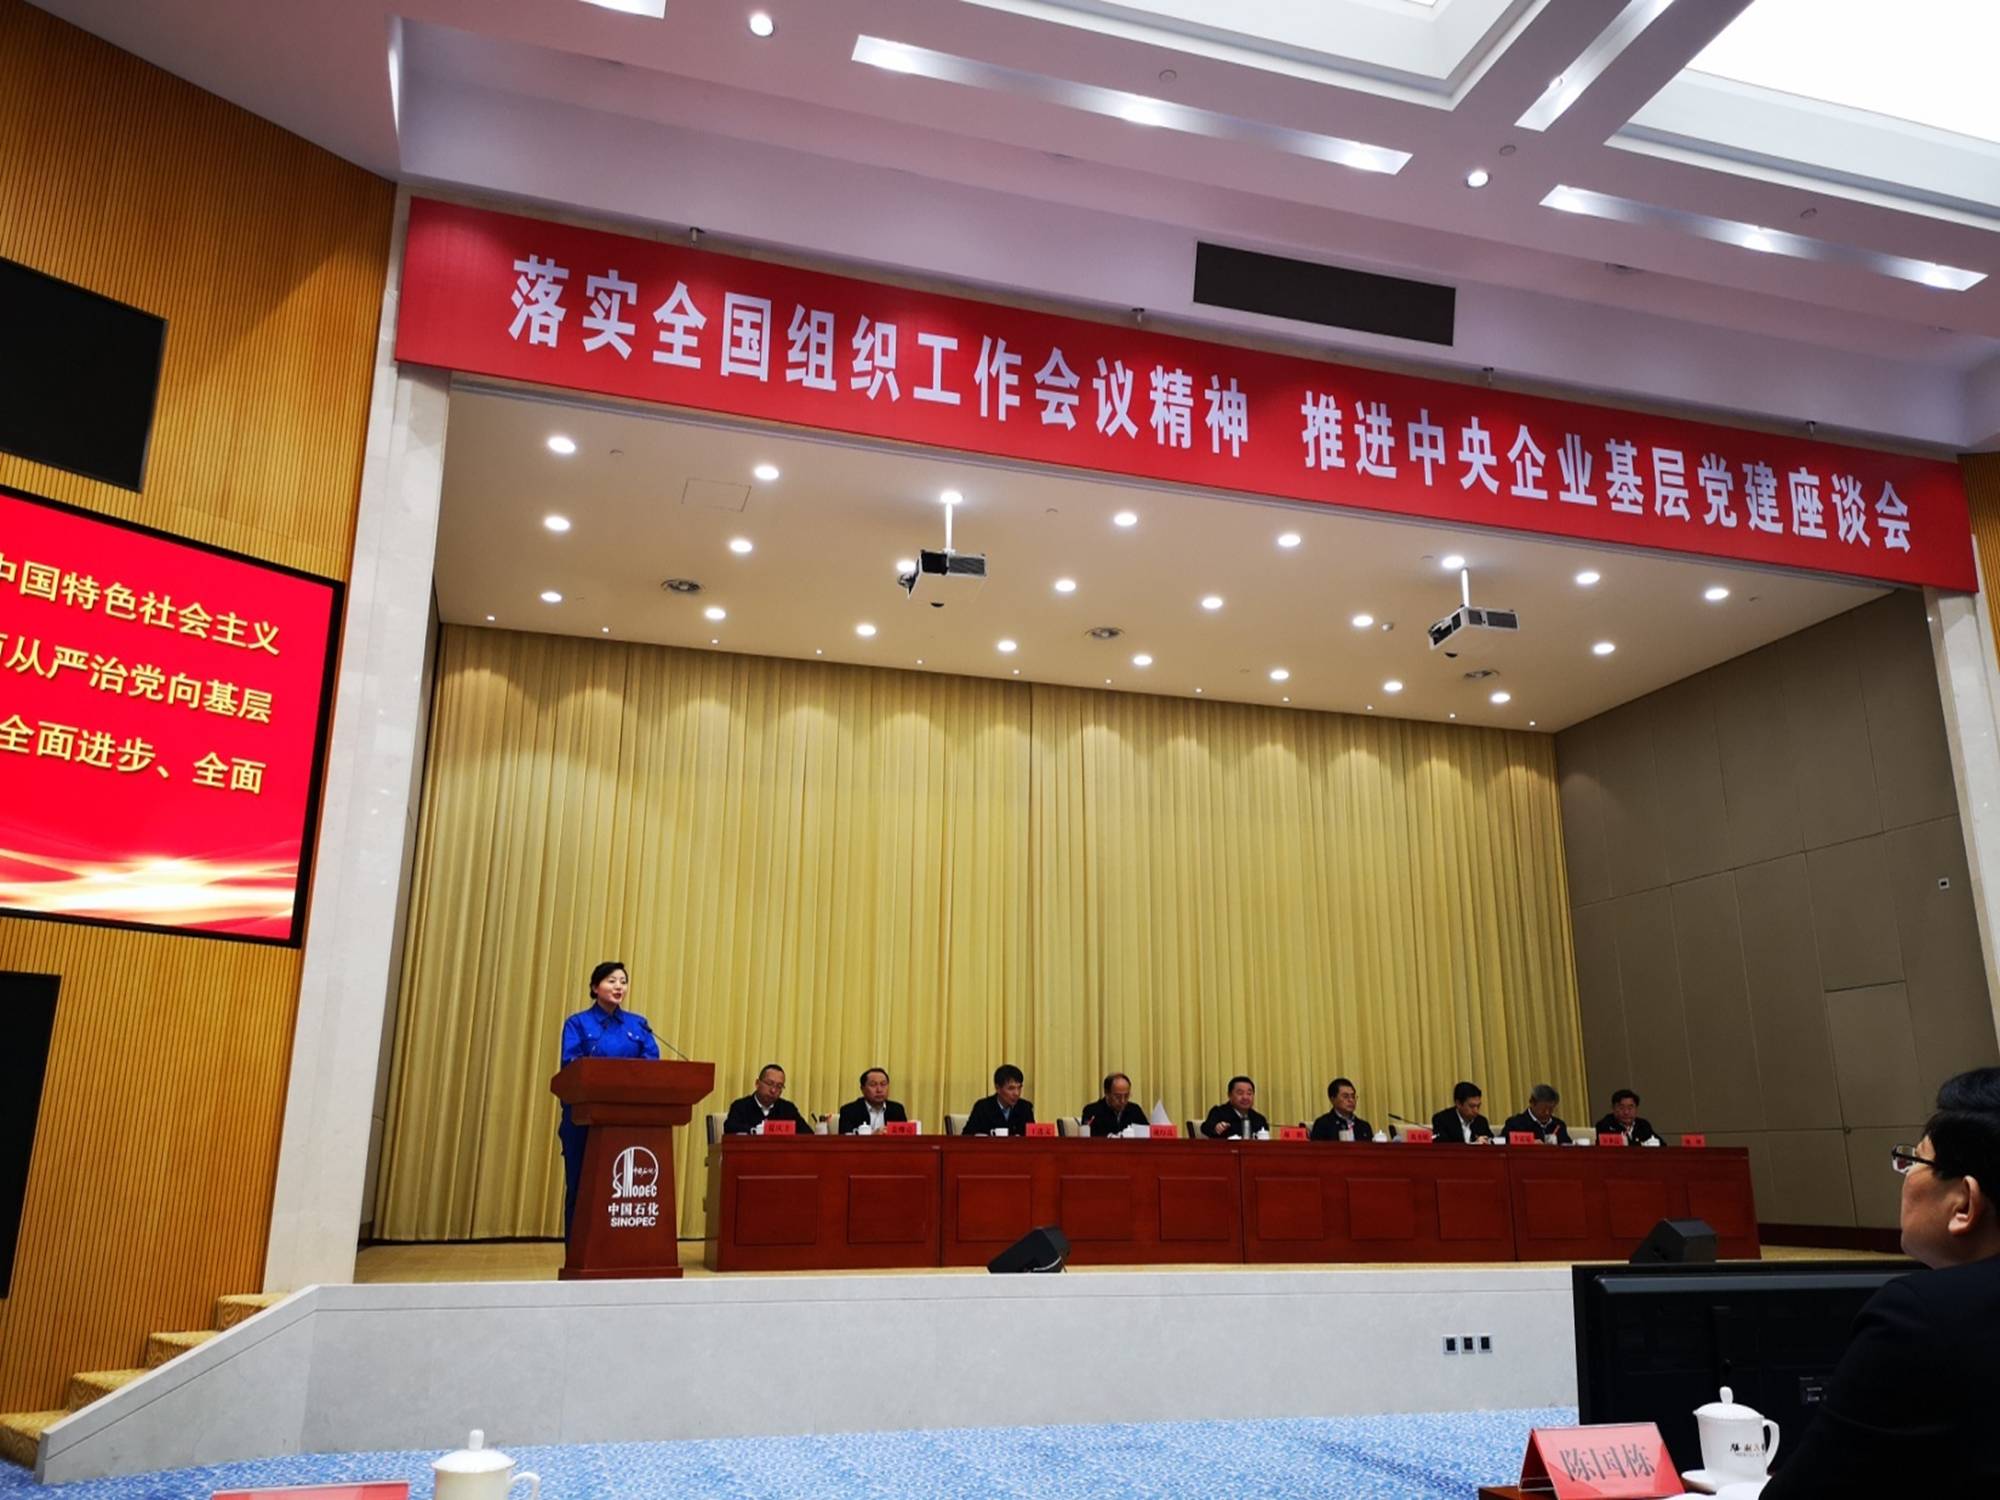 [PPT]中国石油集团电能有限公司《四合格四带头 践行社会主义核心价值观》